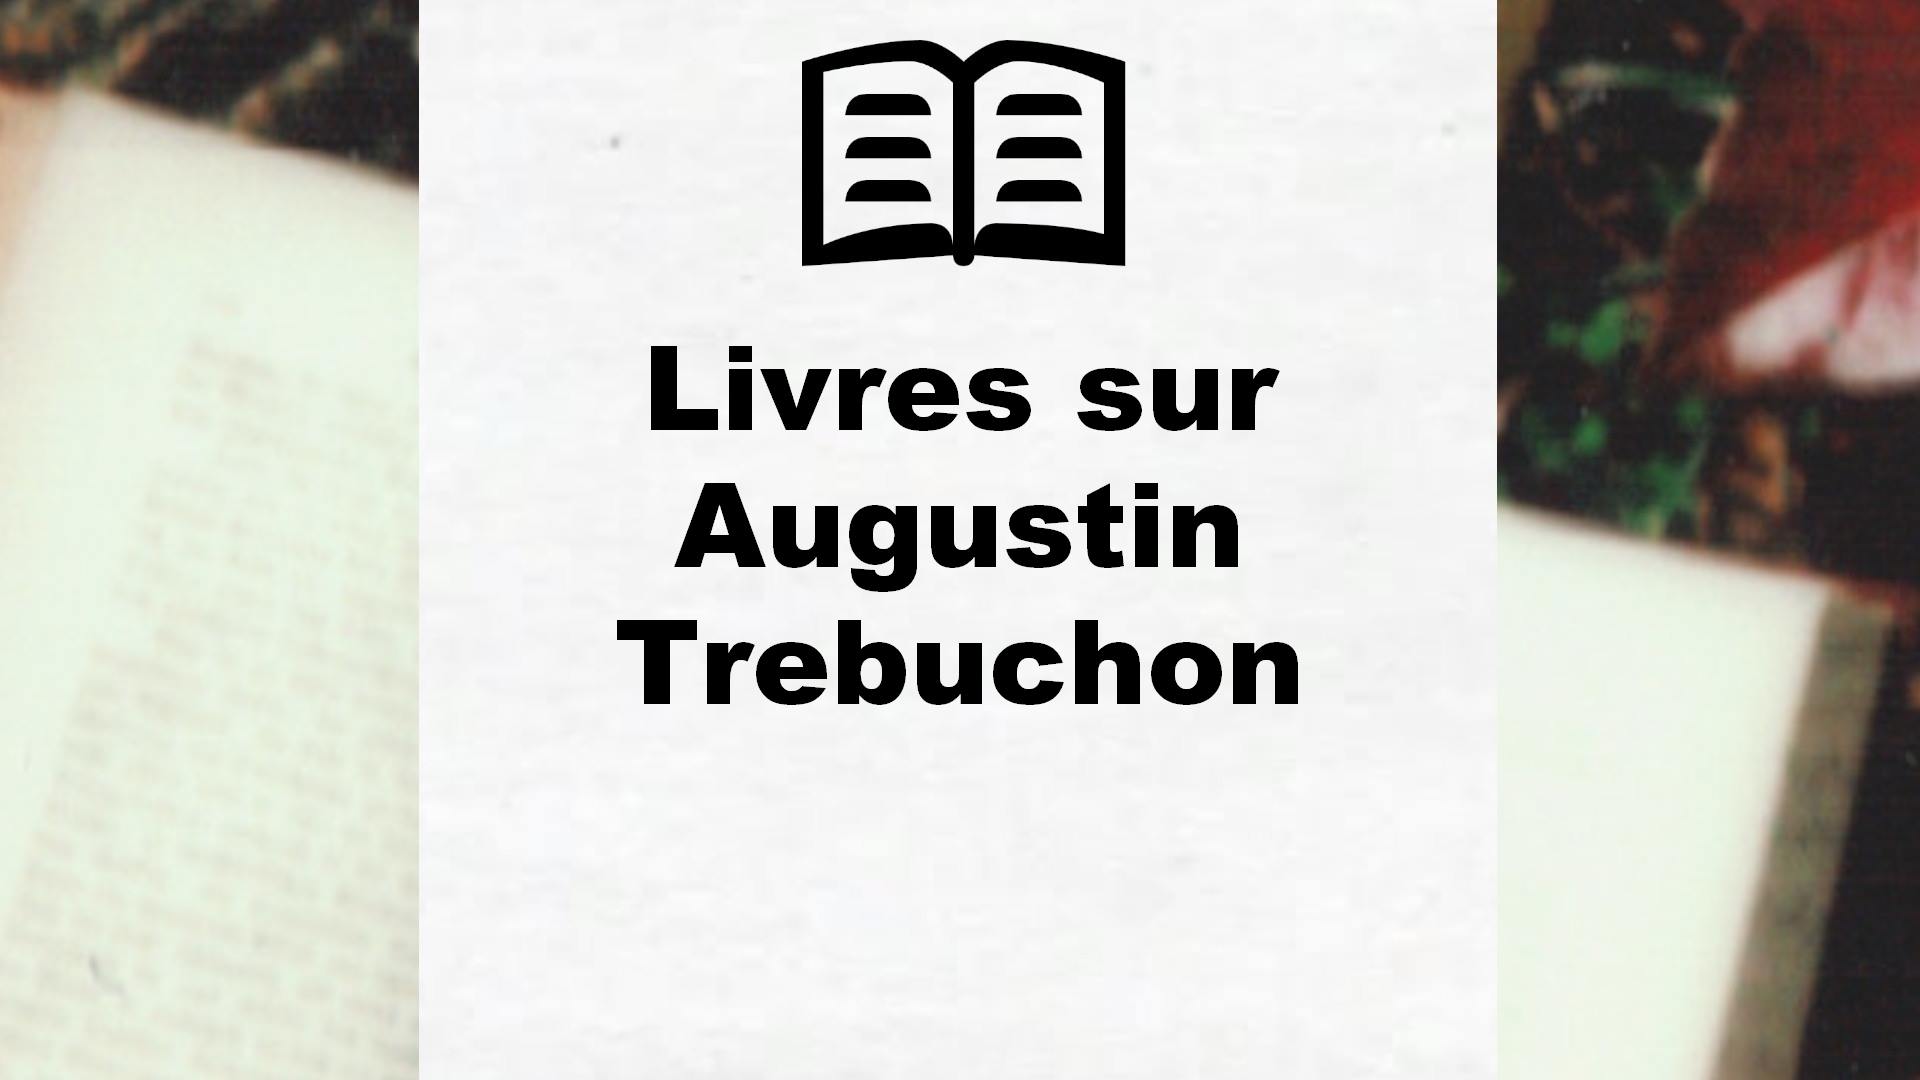 Livres sur Augustin Trebuchon